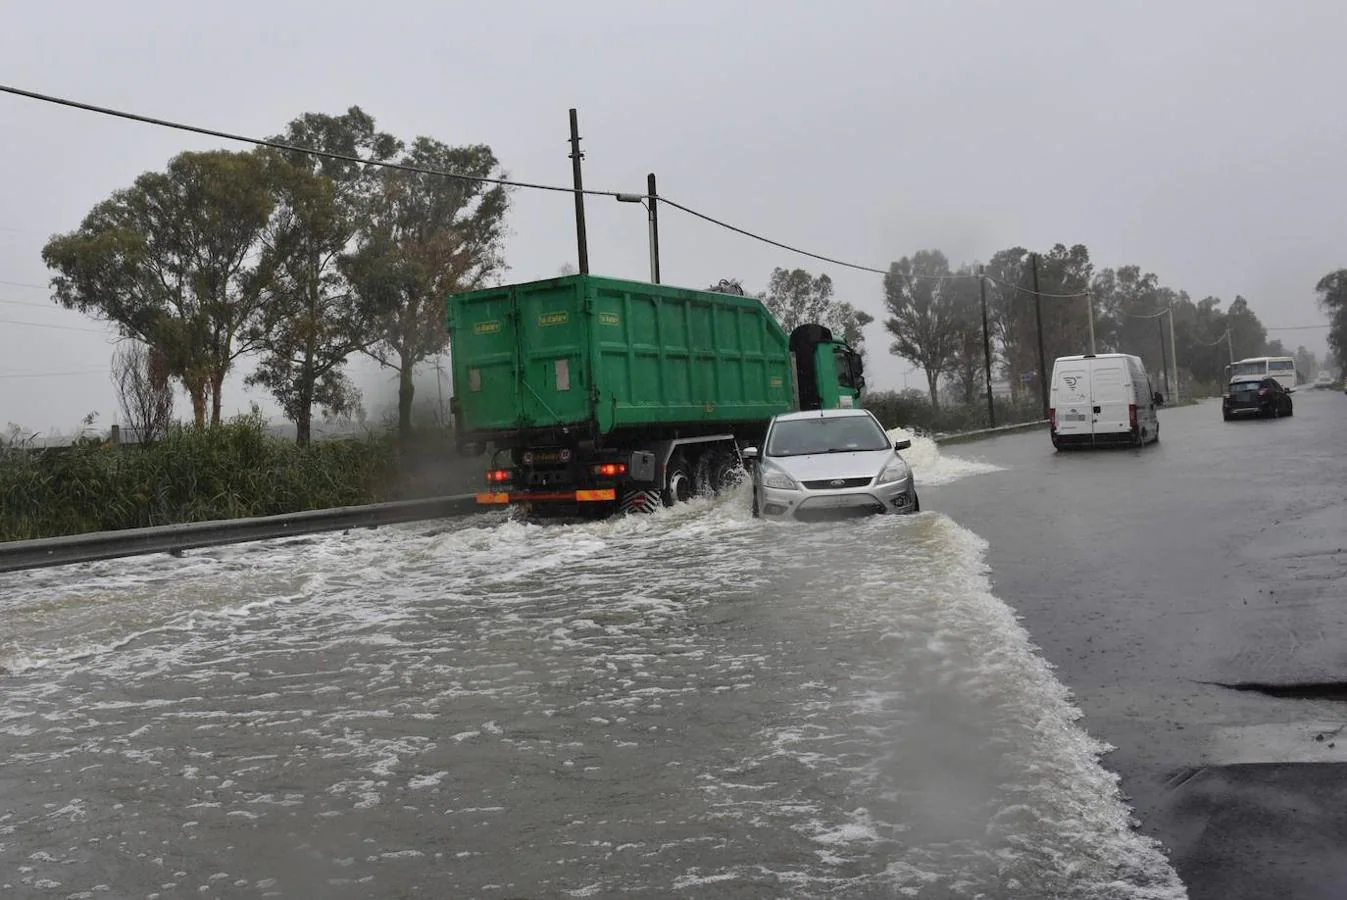 Sicilia se convierte en la otra Venecia por las intensas lluvias de un ciclón tropical